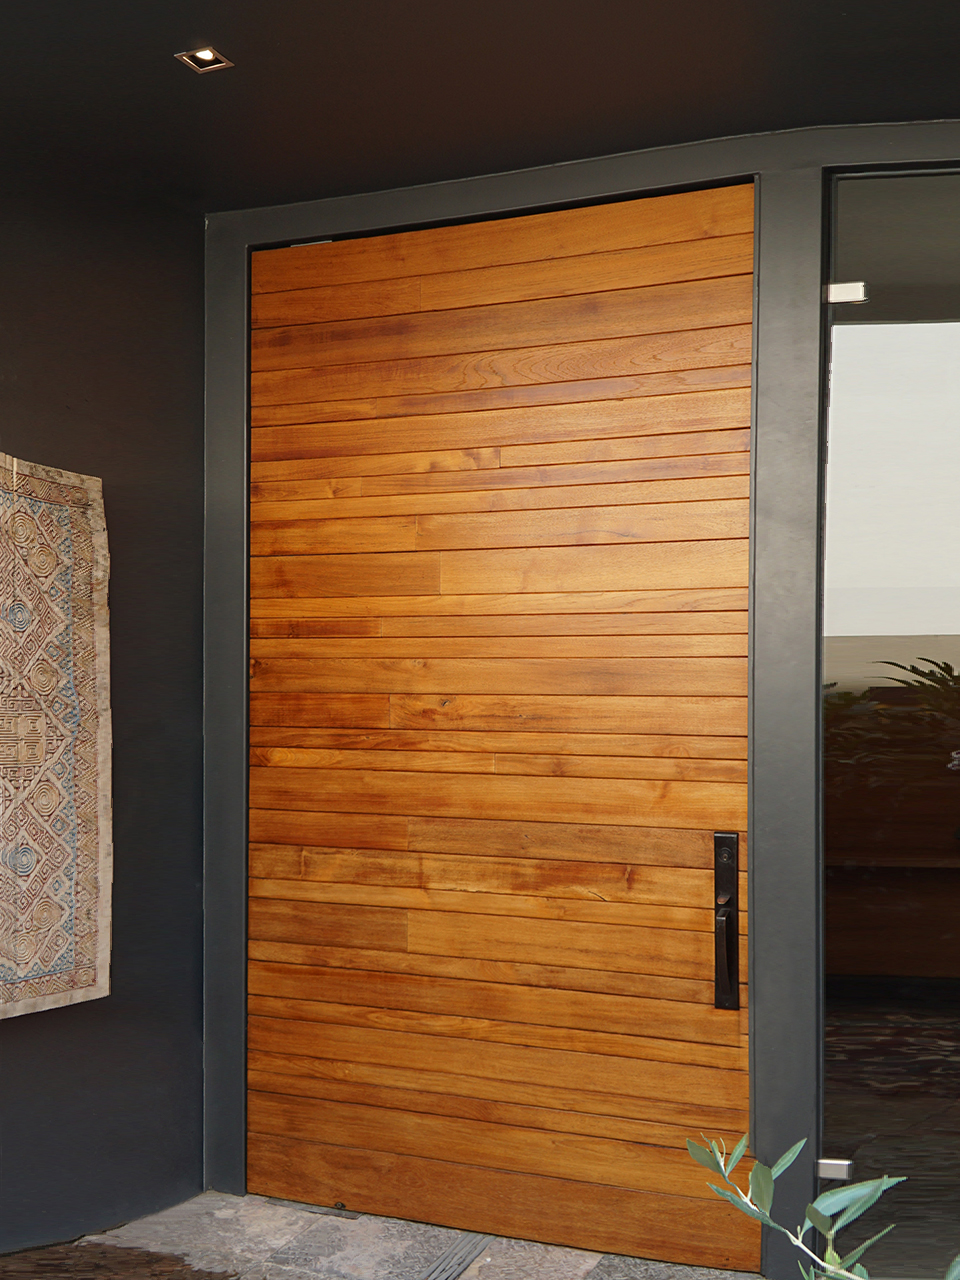 Proyectos con puertas de madera interiores